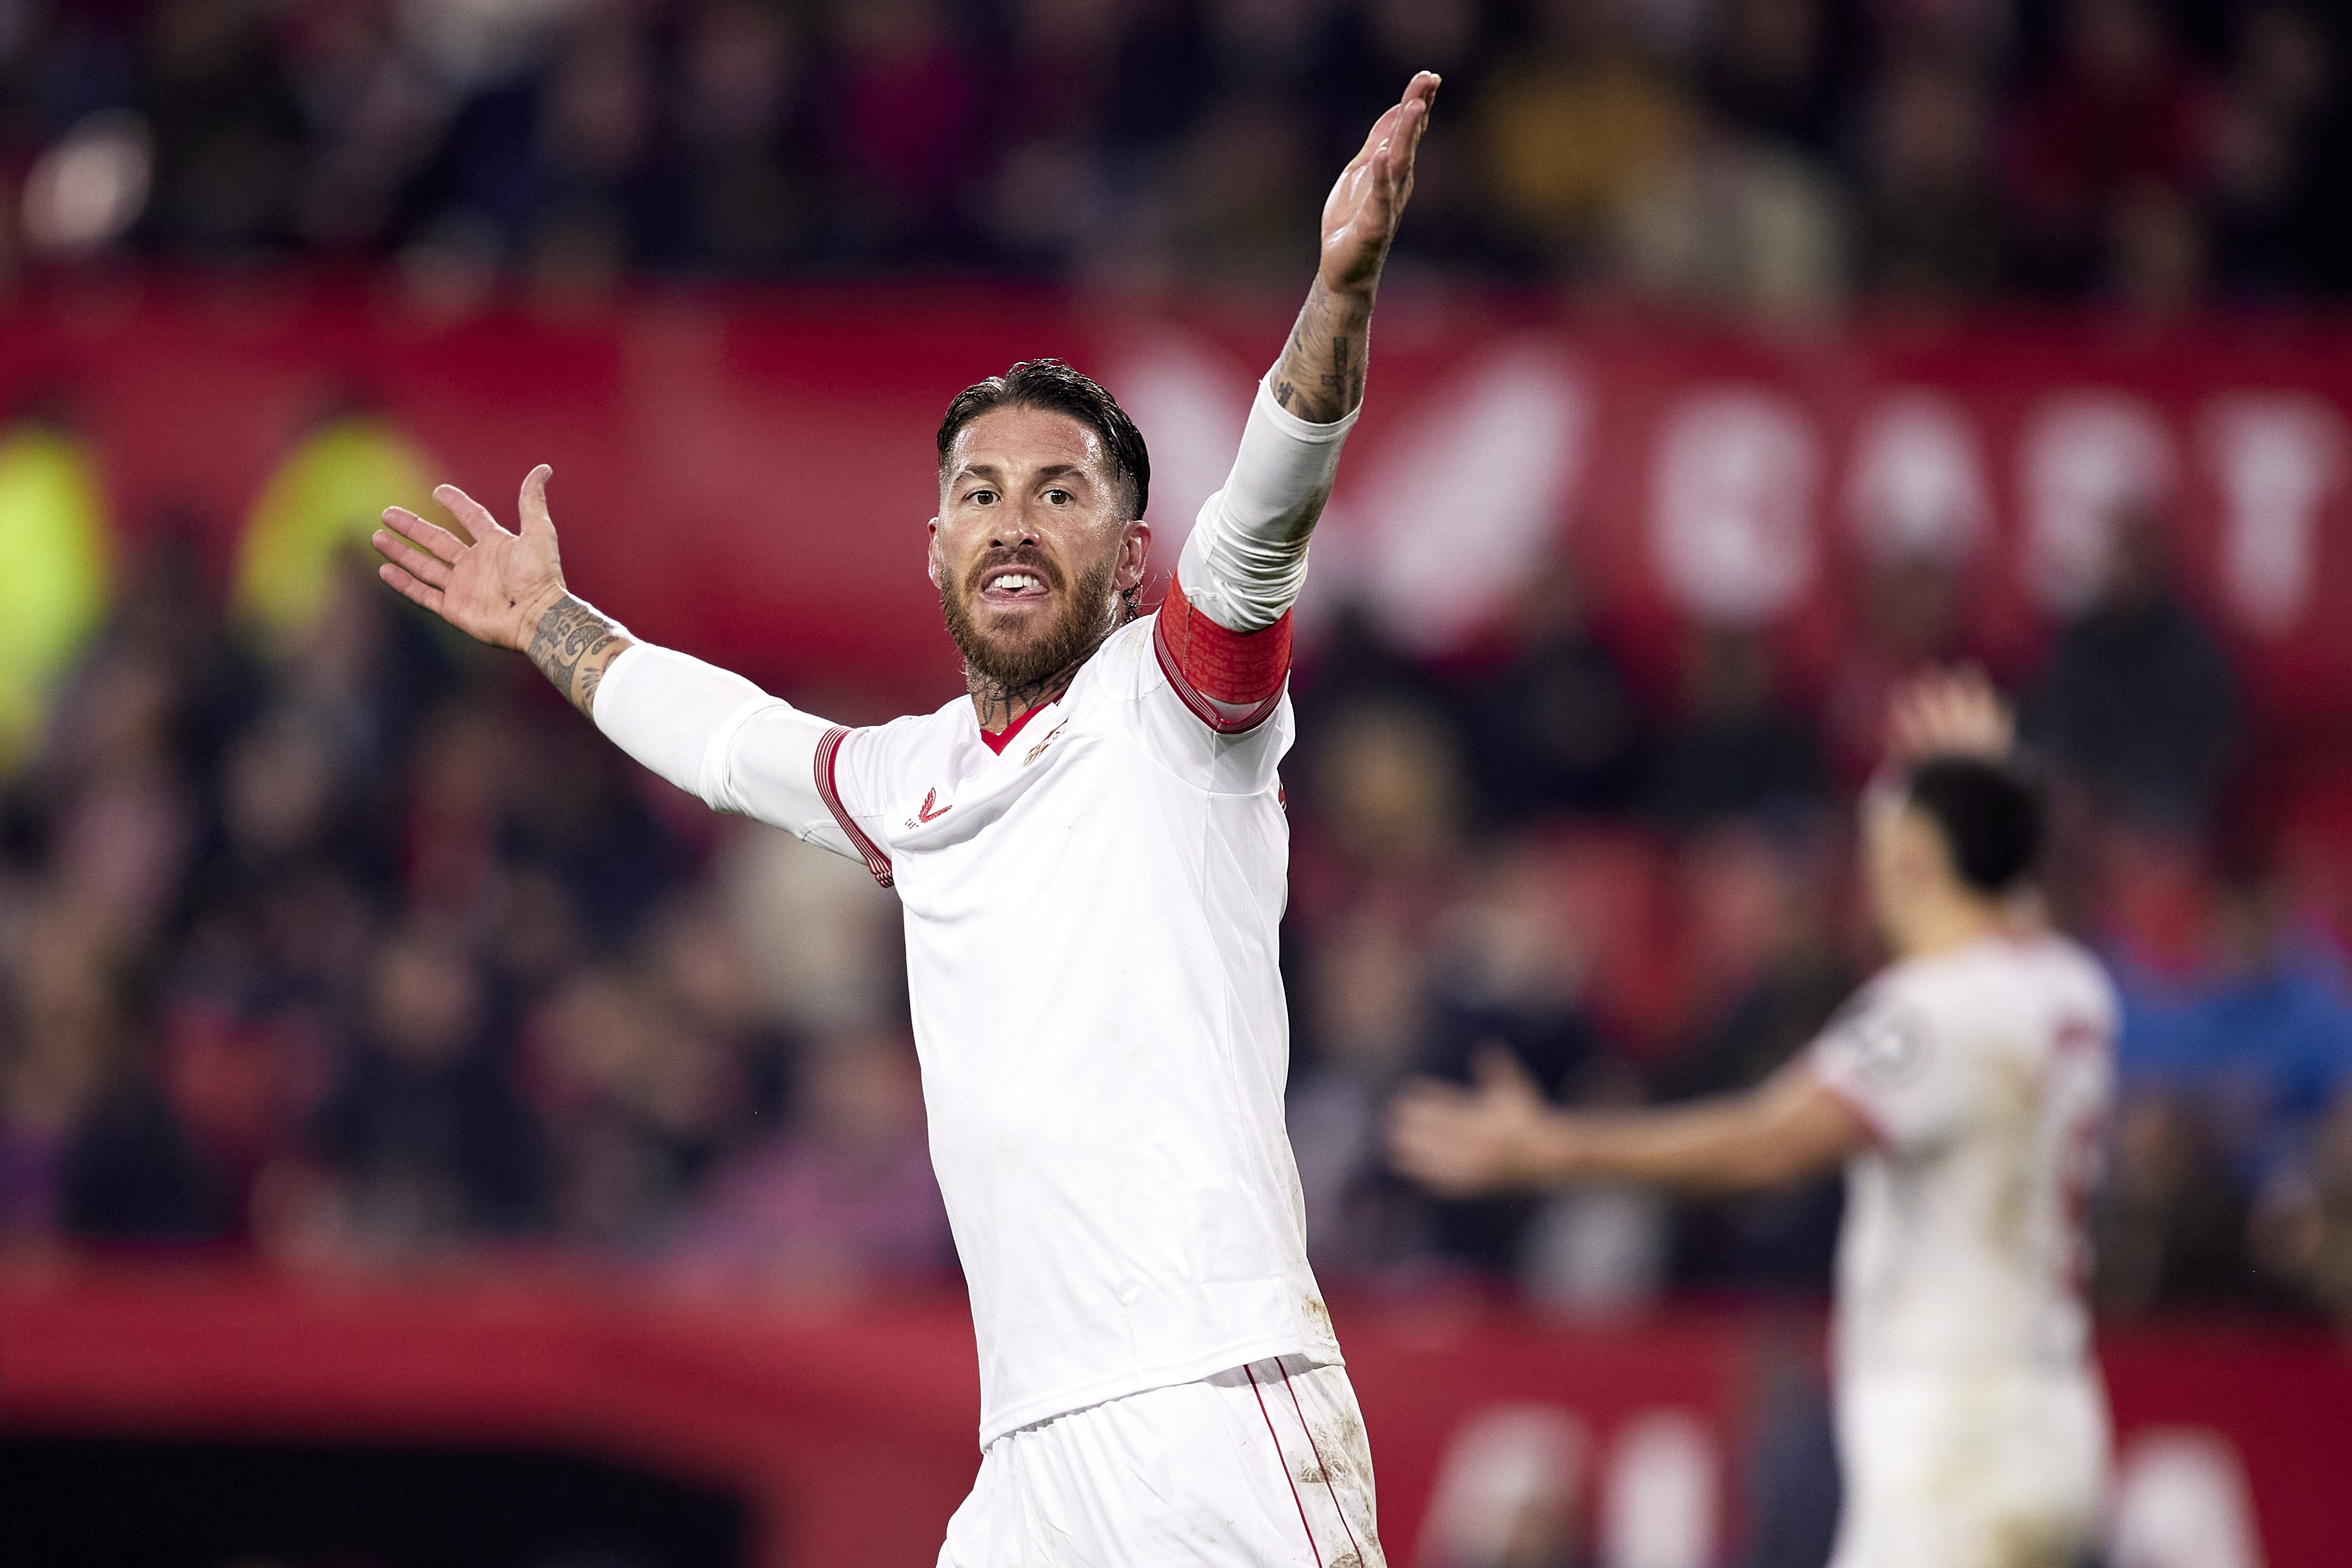 Der Vorfall ereignete sich nach der 0:2-Heimniederlage Sevillas gegen Athletic Bilbao